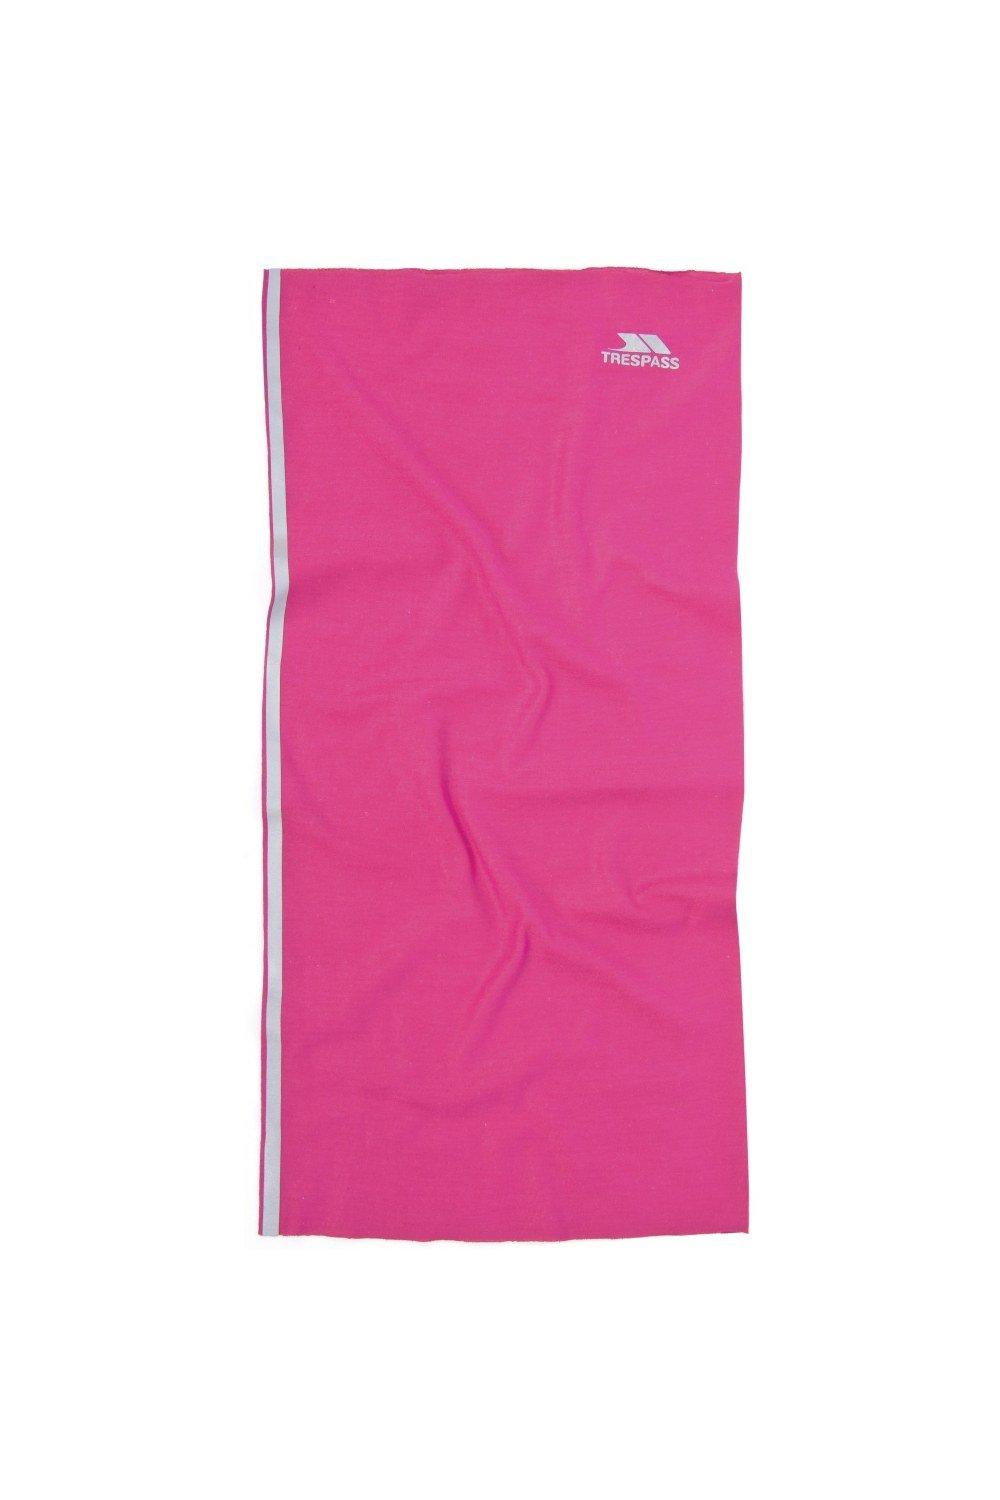 Многофункциональный шейный шарф Tattler Trespass, розовый elaifruihao шелковый шарф с цветочным рисунком женские шарфы шали хиджаб шейный платок большой квадратный атласный шарф 110 см палантины